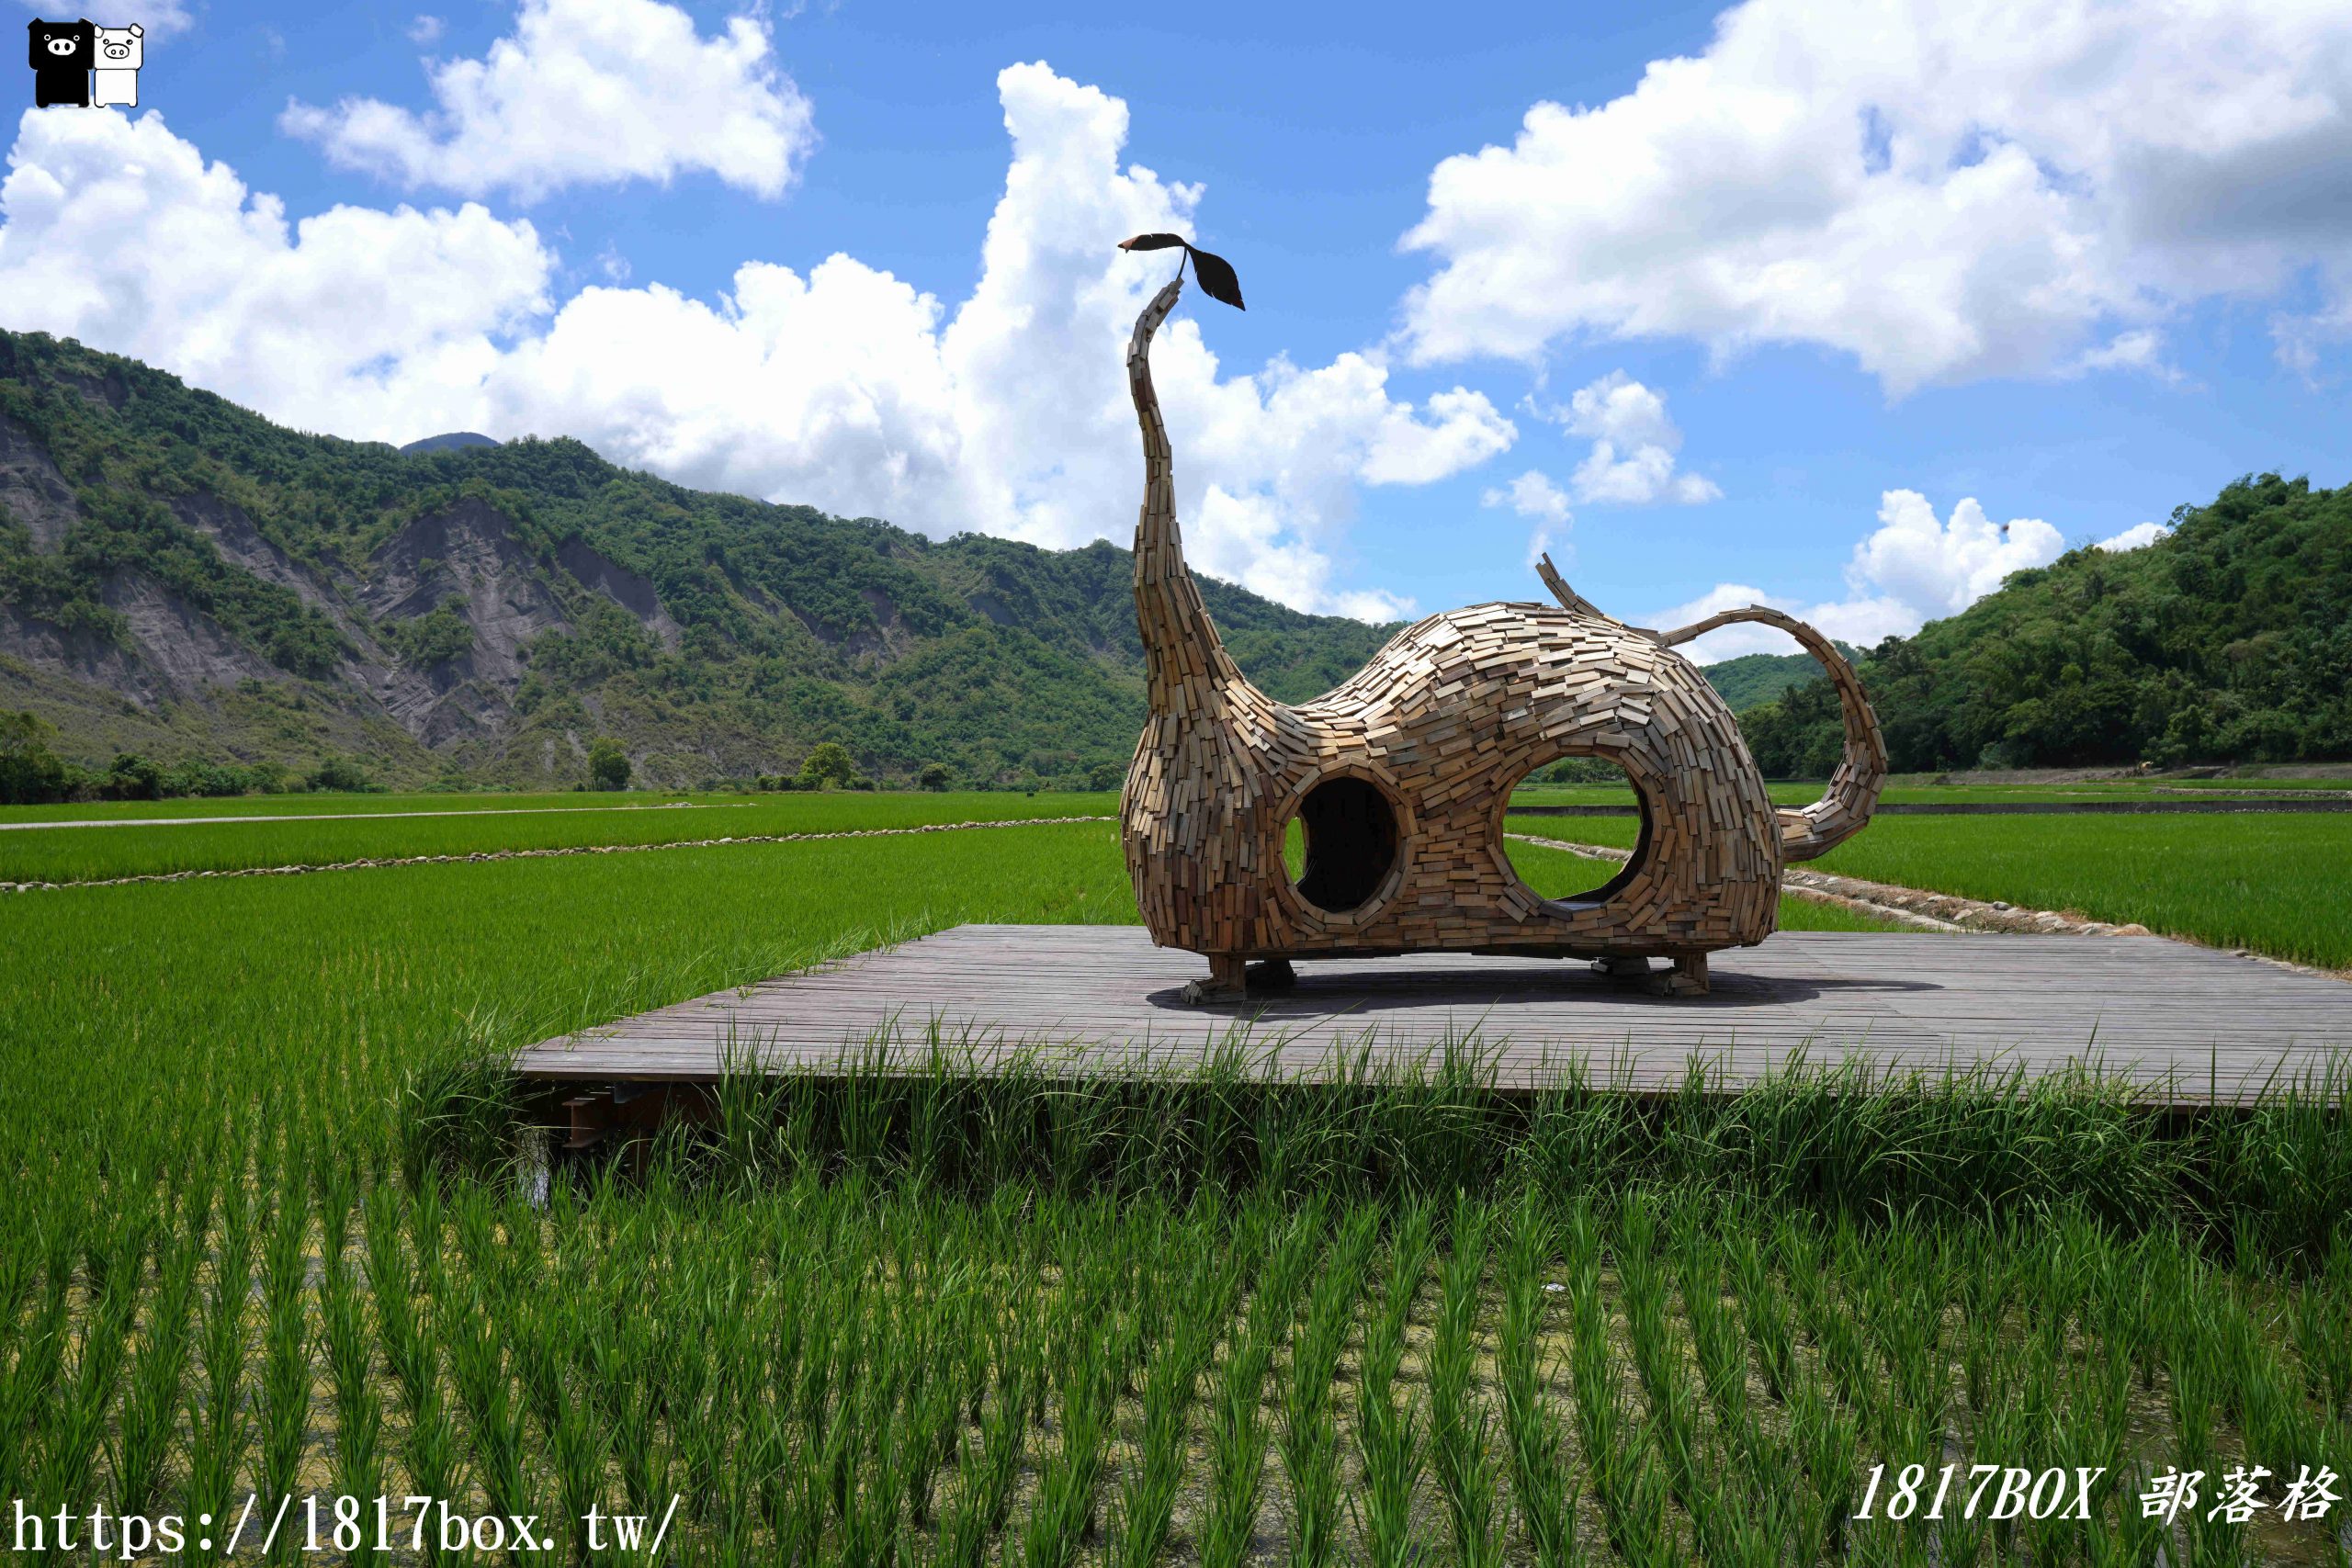 【懶人包】2021「漂鳥197-縱谷大地藝術季」。6組藝術地景創作。作品地圖